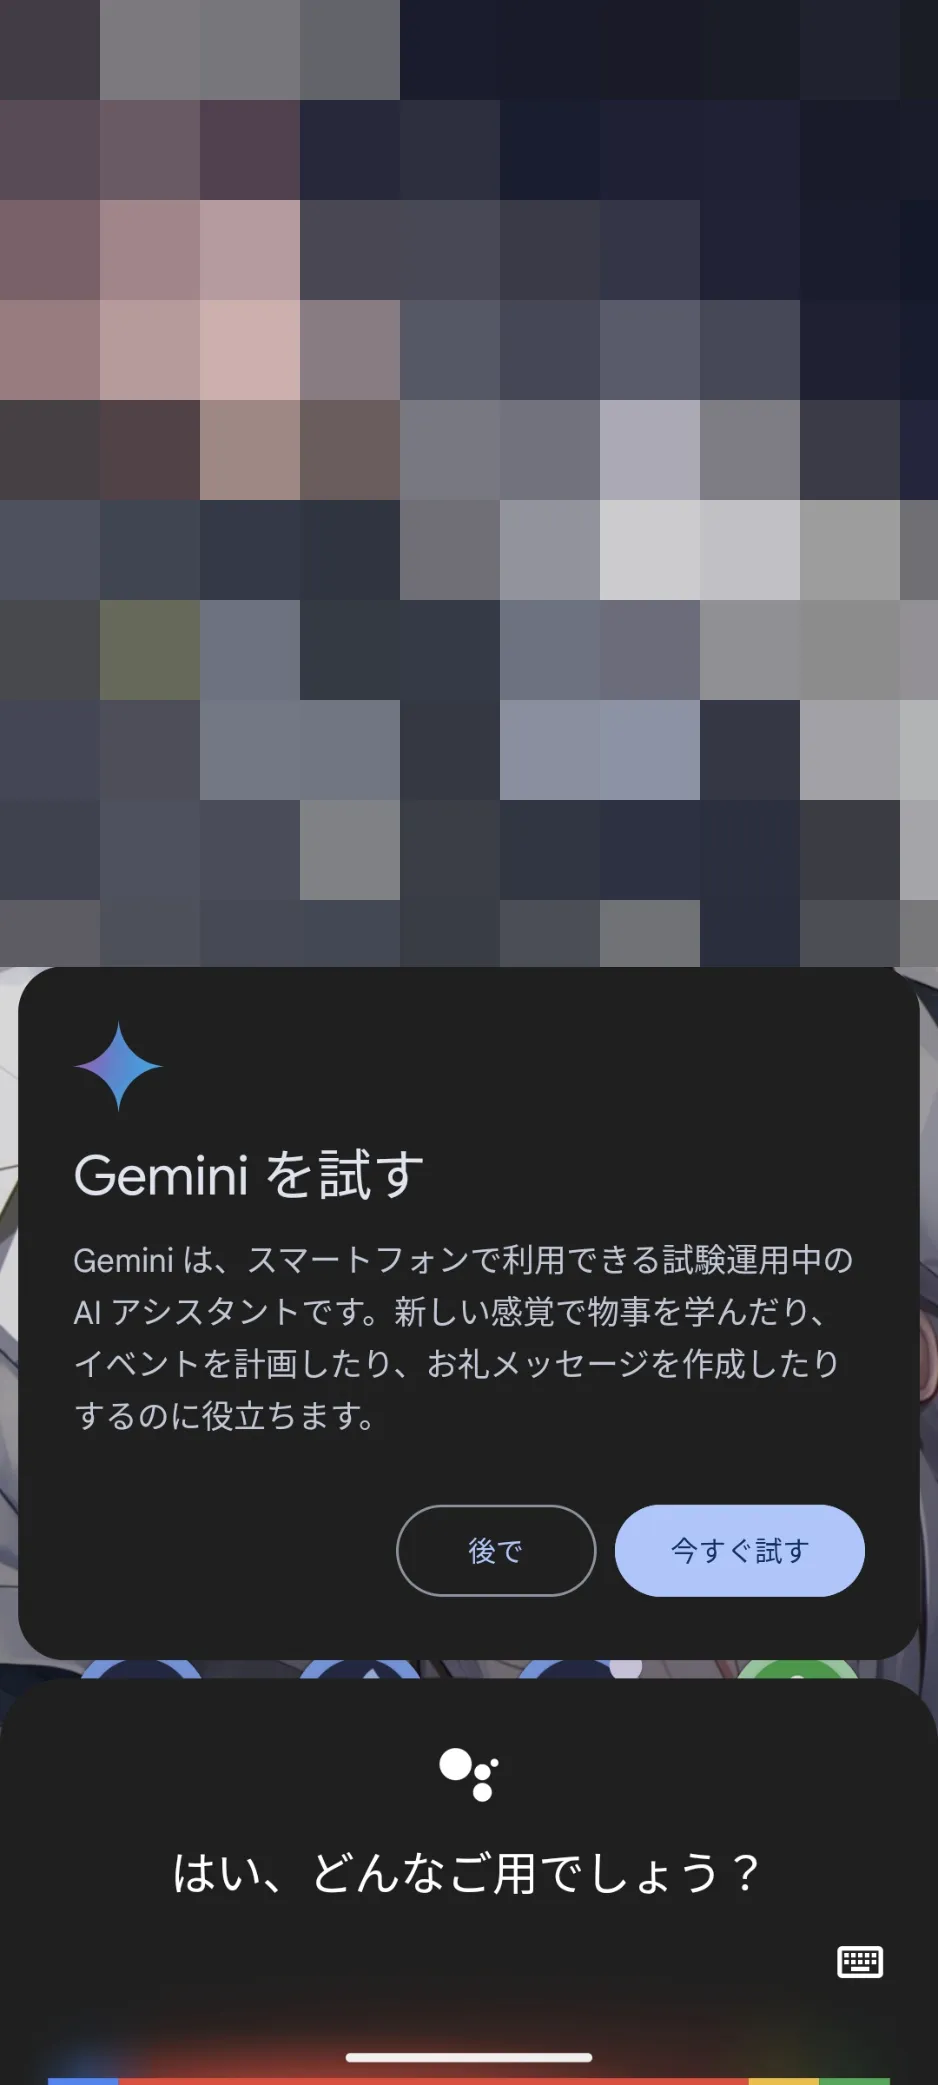 Geminiを利用可能になったことを示すメッセージ